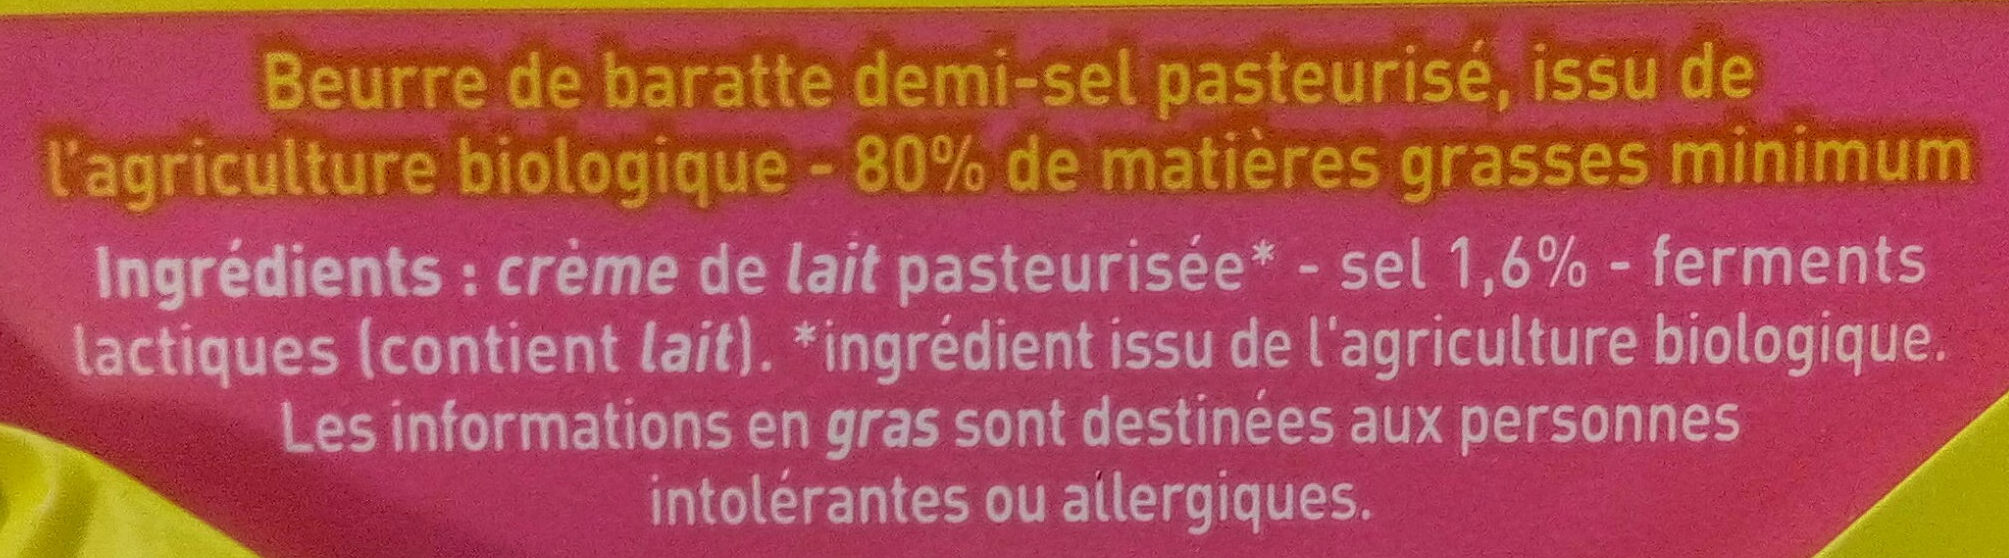 Beurre de baratte demi-sel - Ingredientes - fr